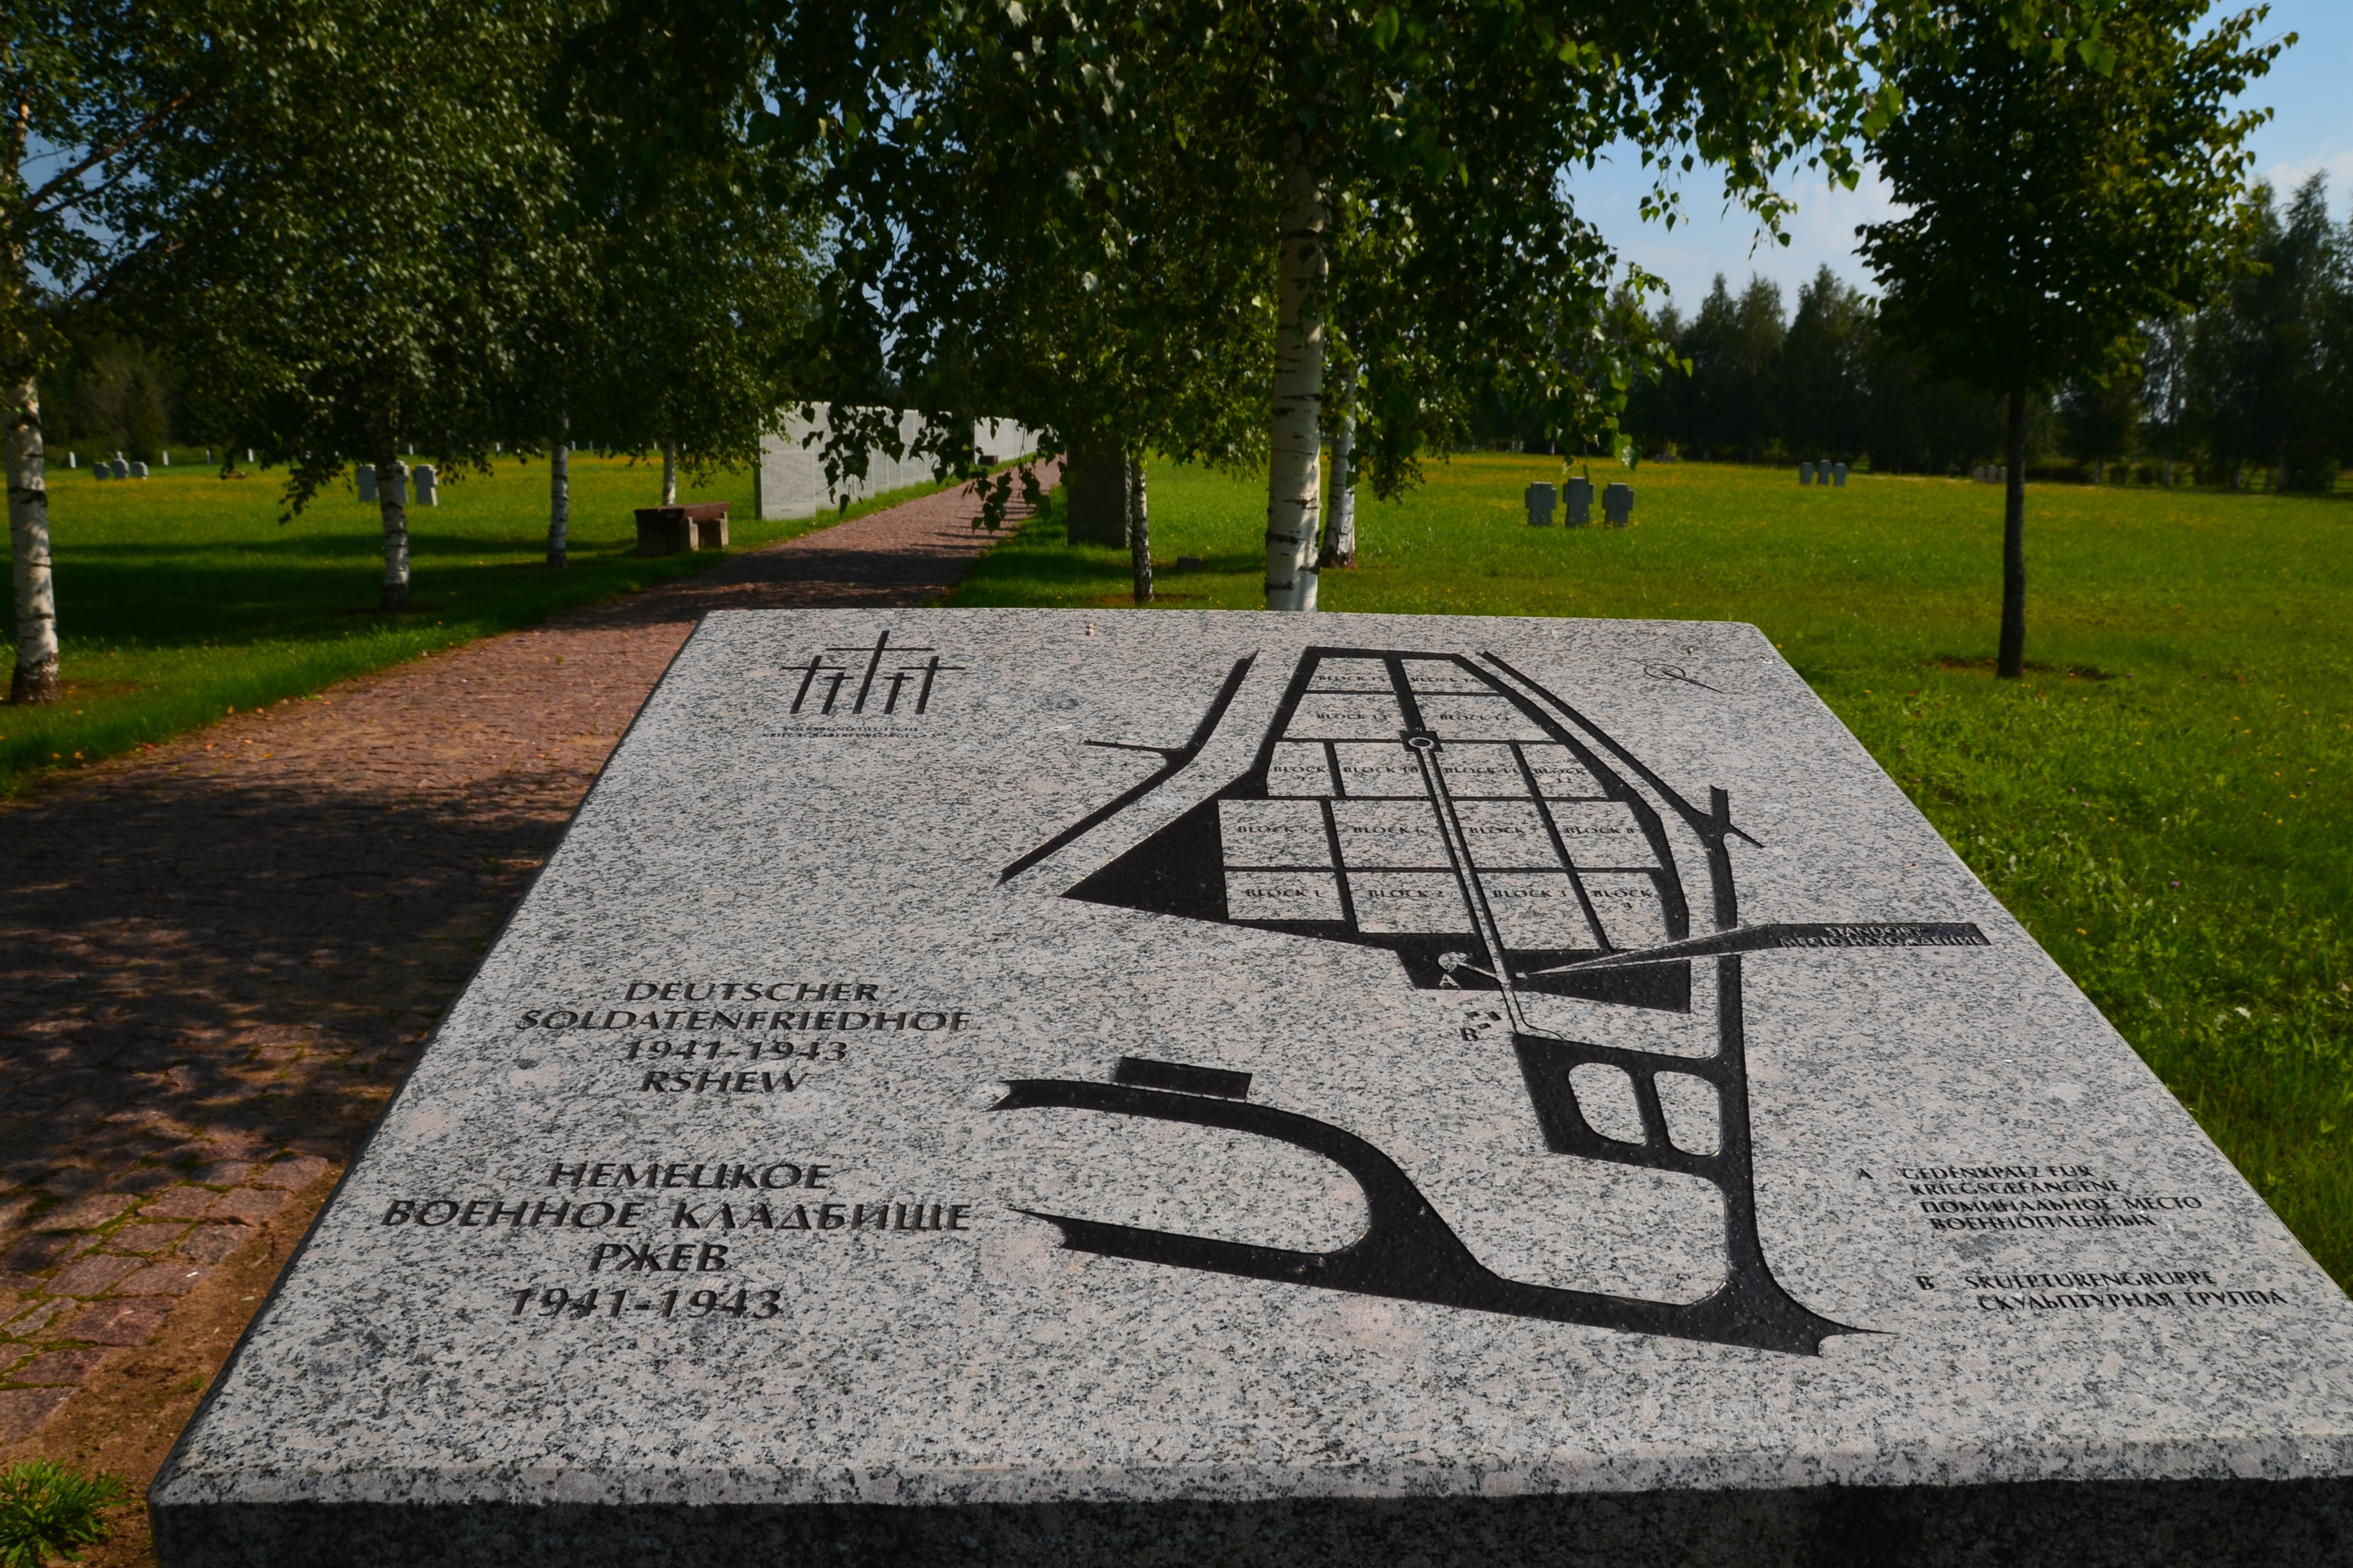 Plan des Deutschen Soldatenfriedhofs in Rschew.\n